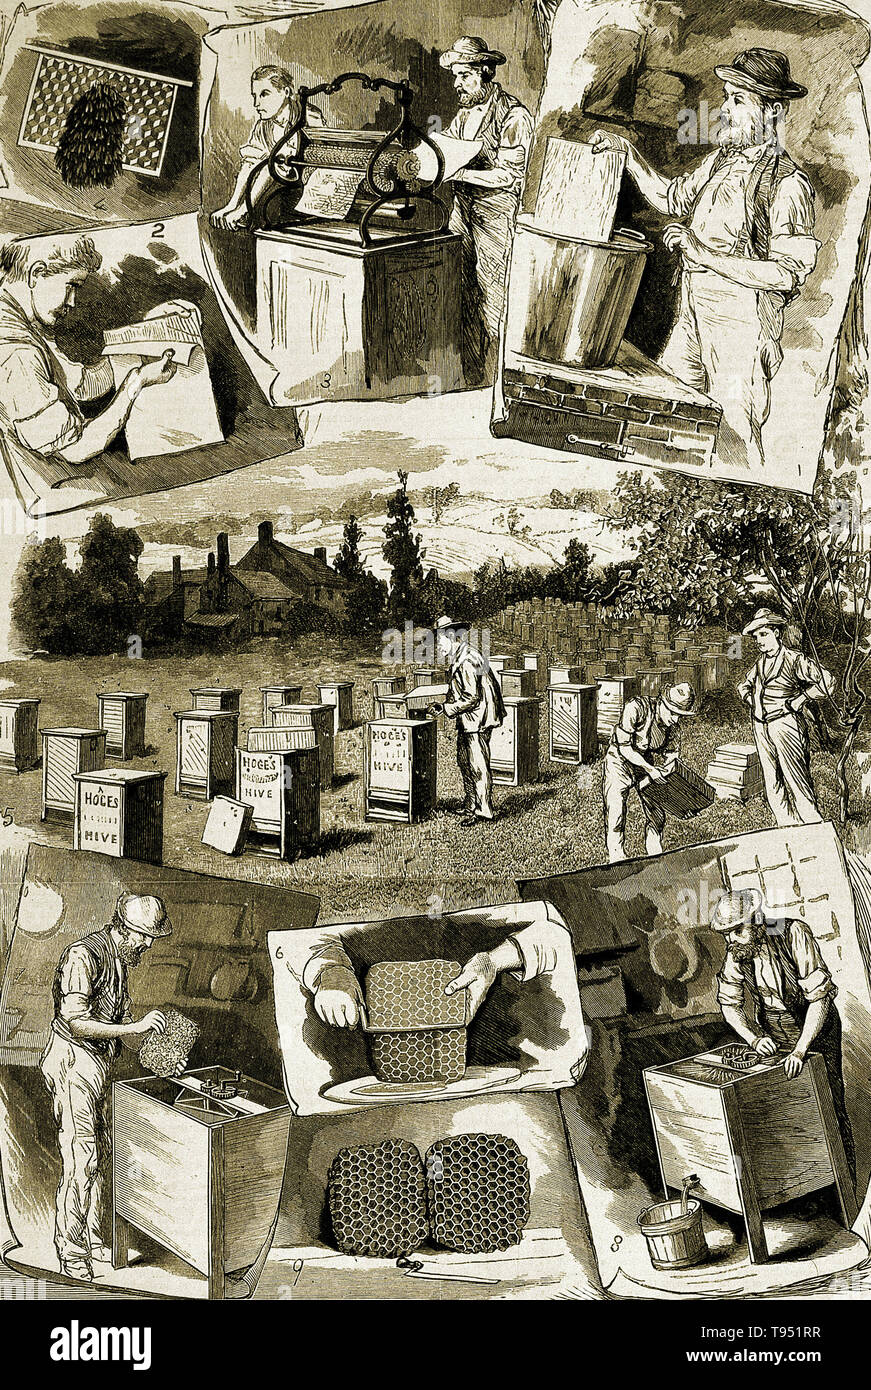 Bienenhaltung: Szenen der Imkerei und Honig zu sammeln. Holzstich, 1885. Stockfoto